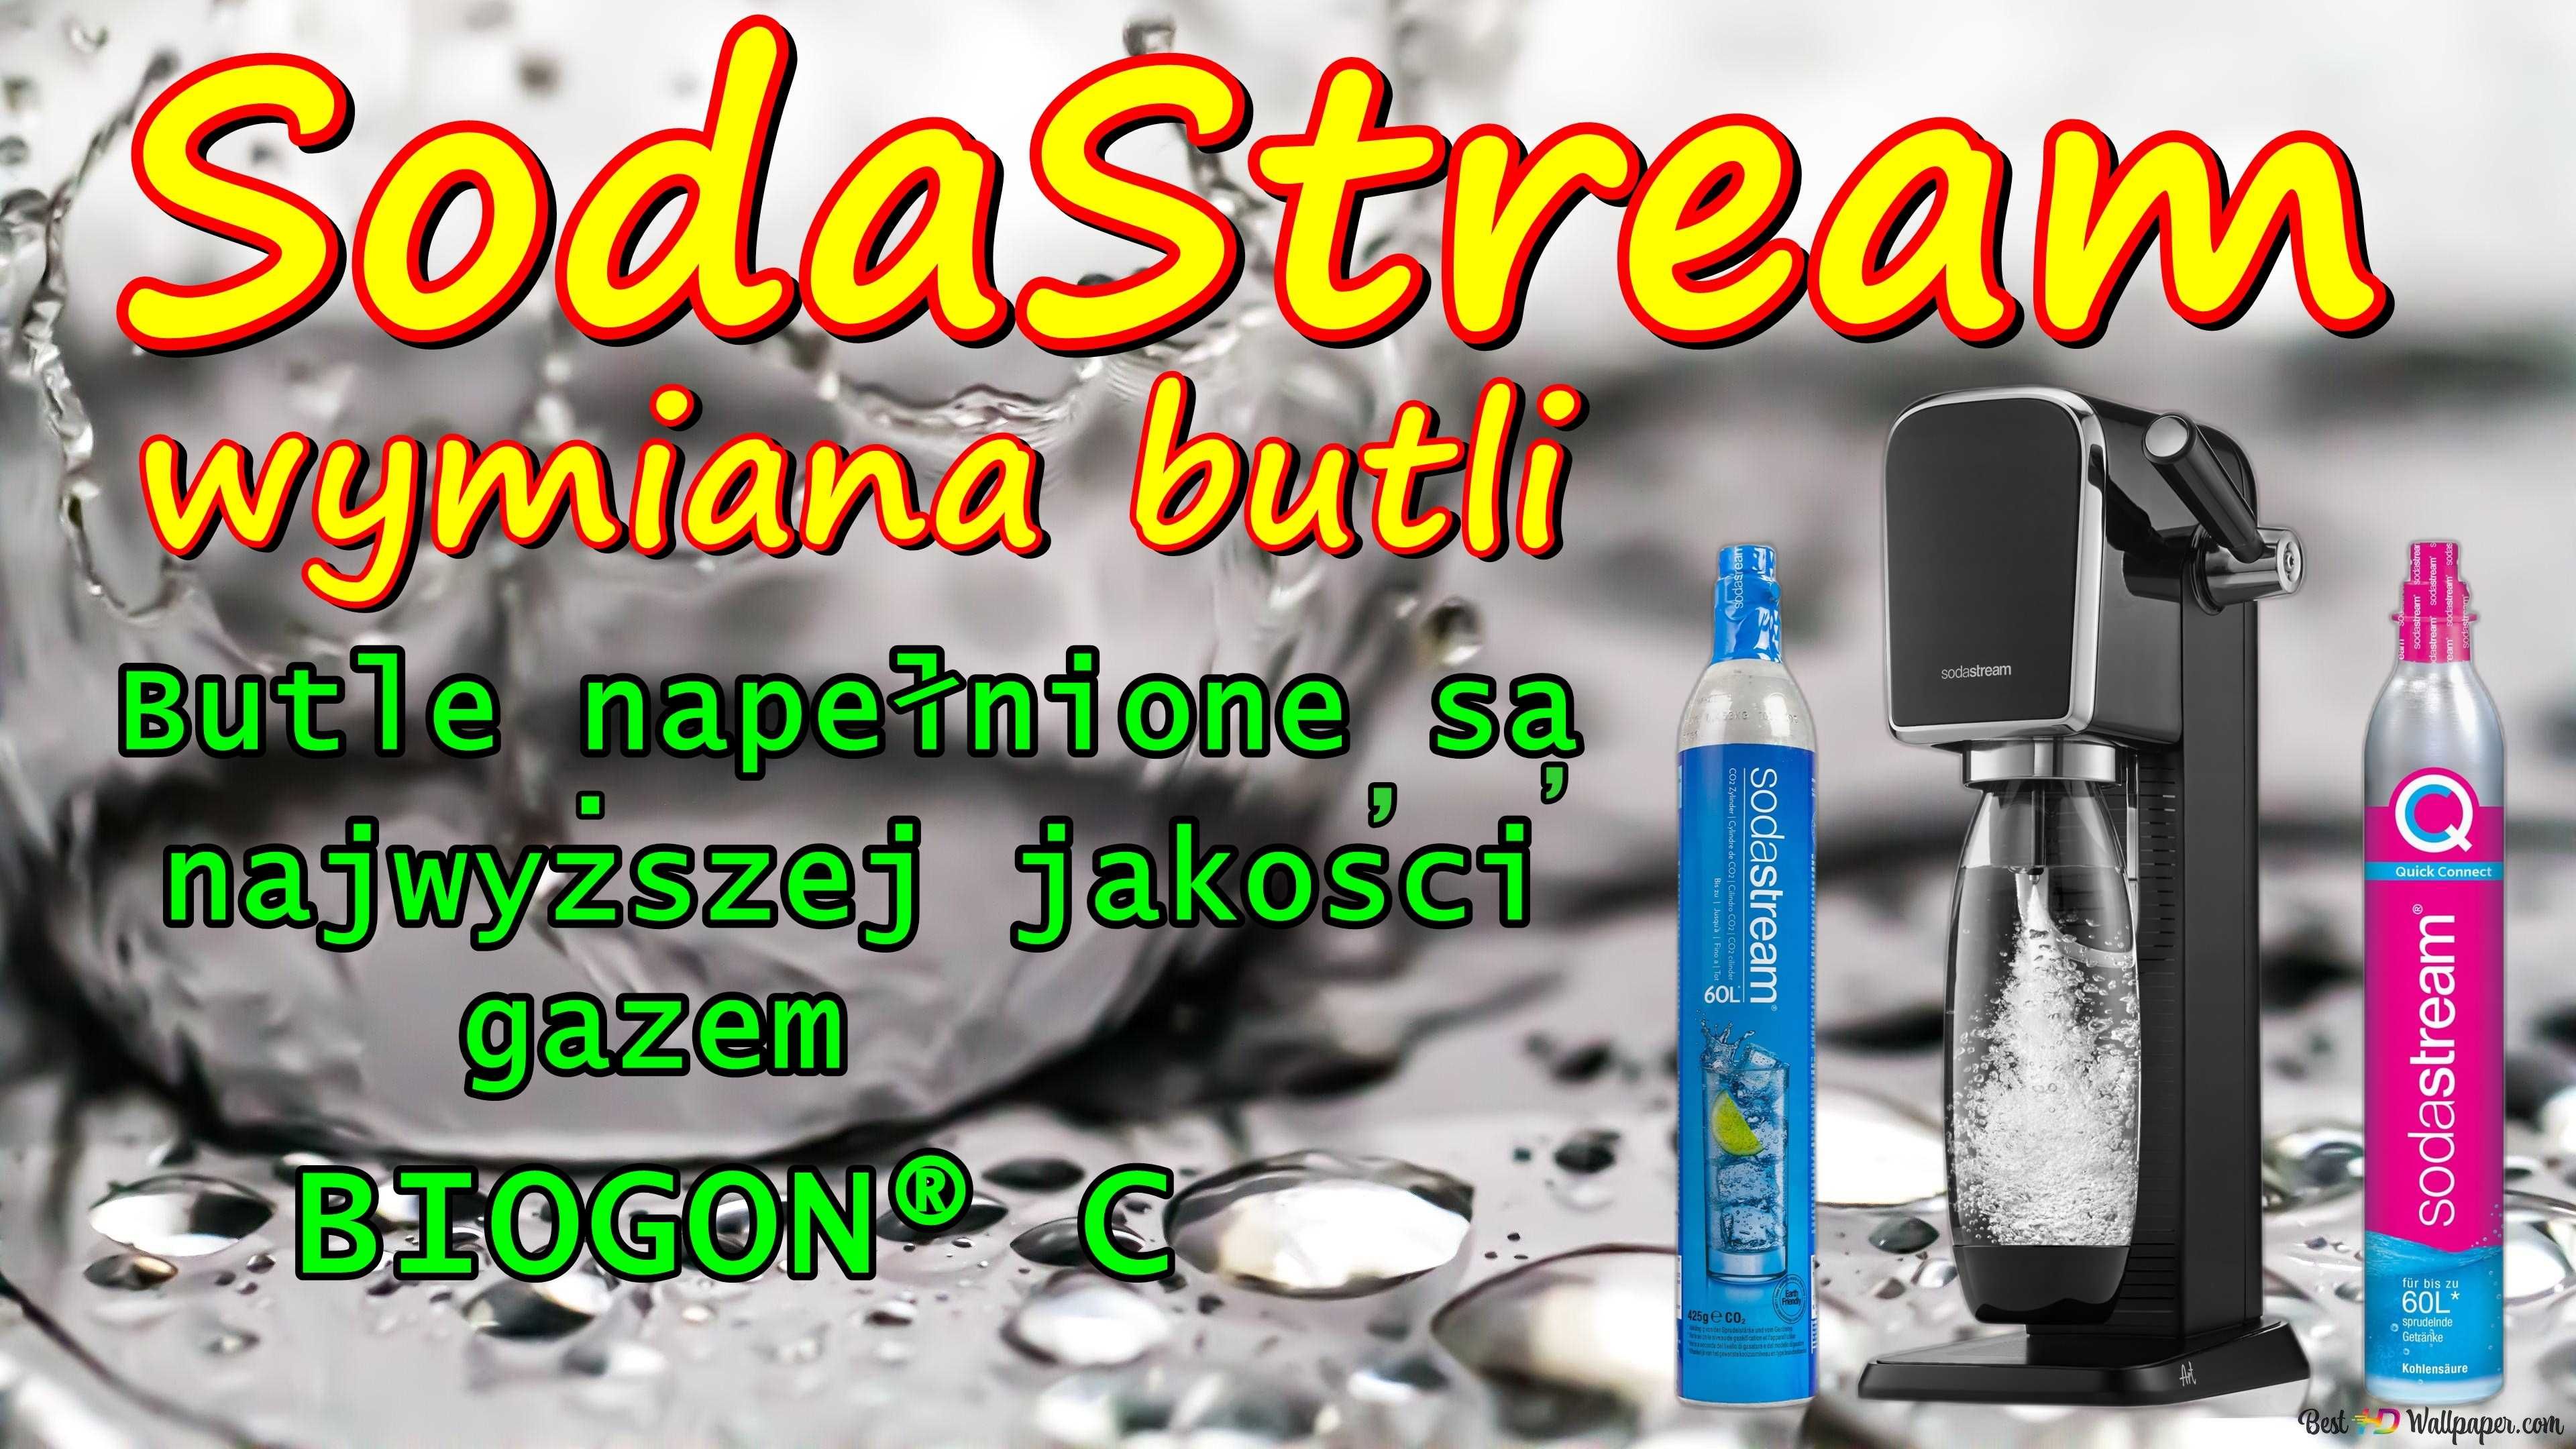 SodaStream -wymiana butli Co2